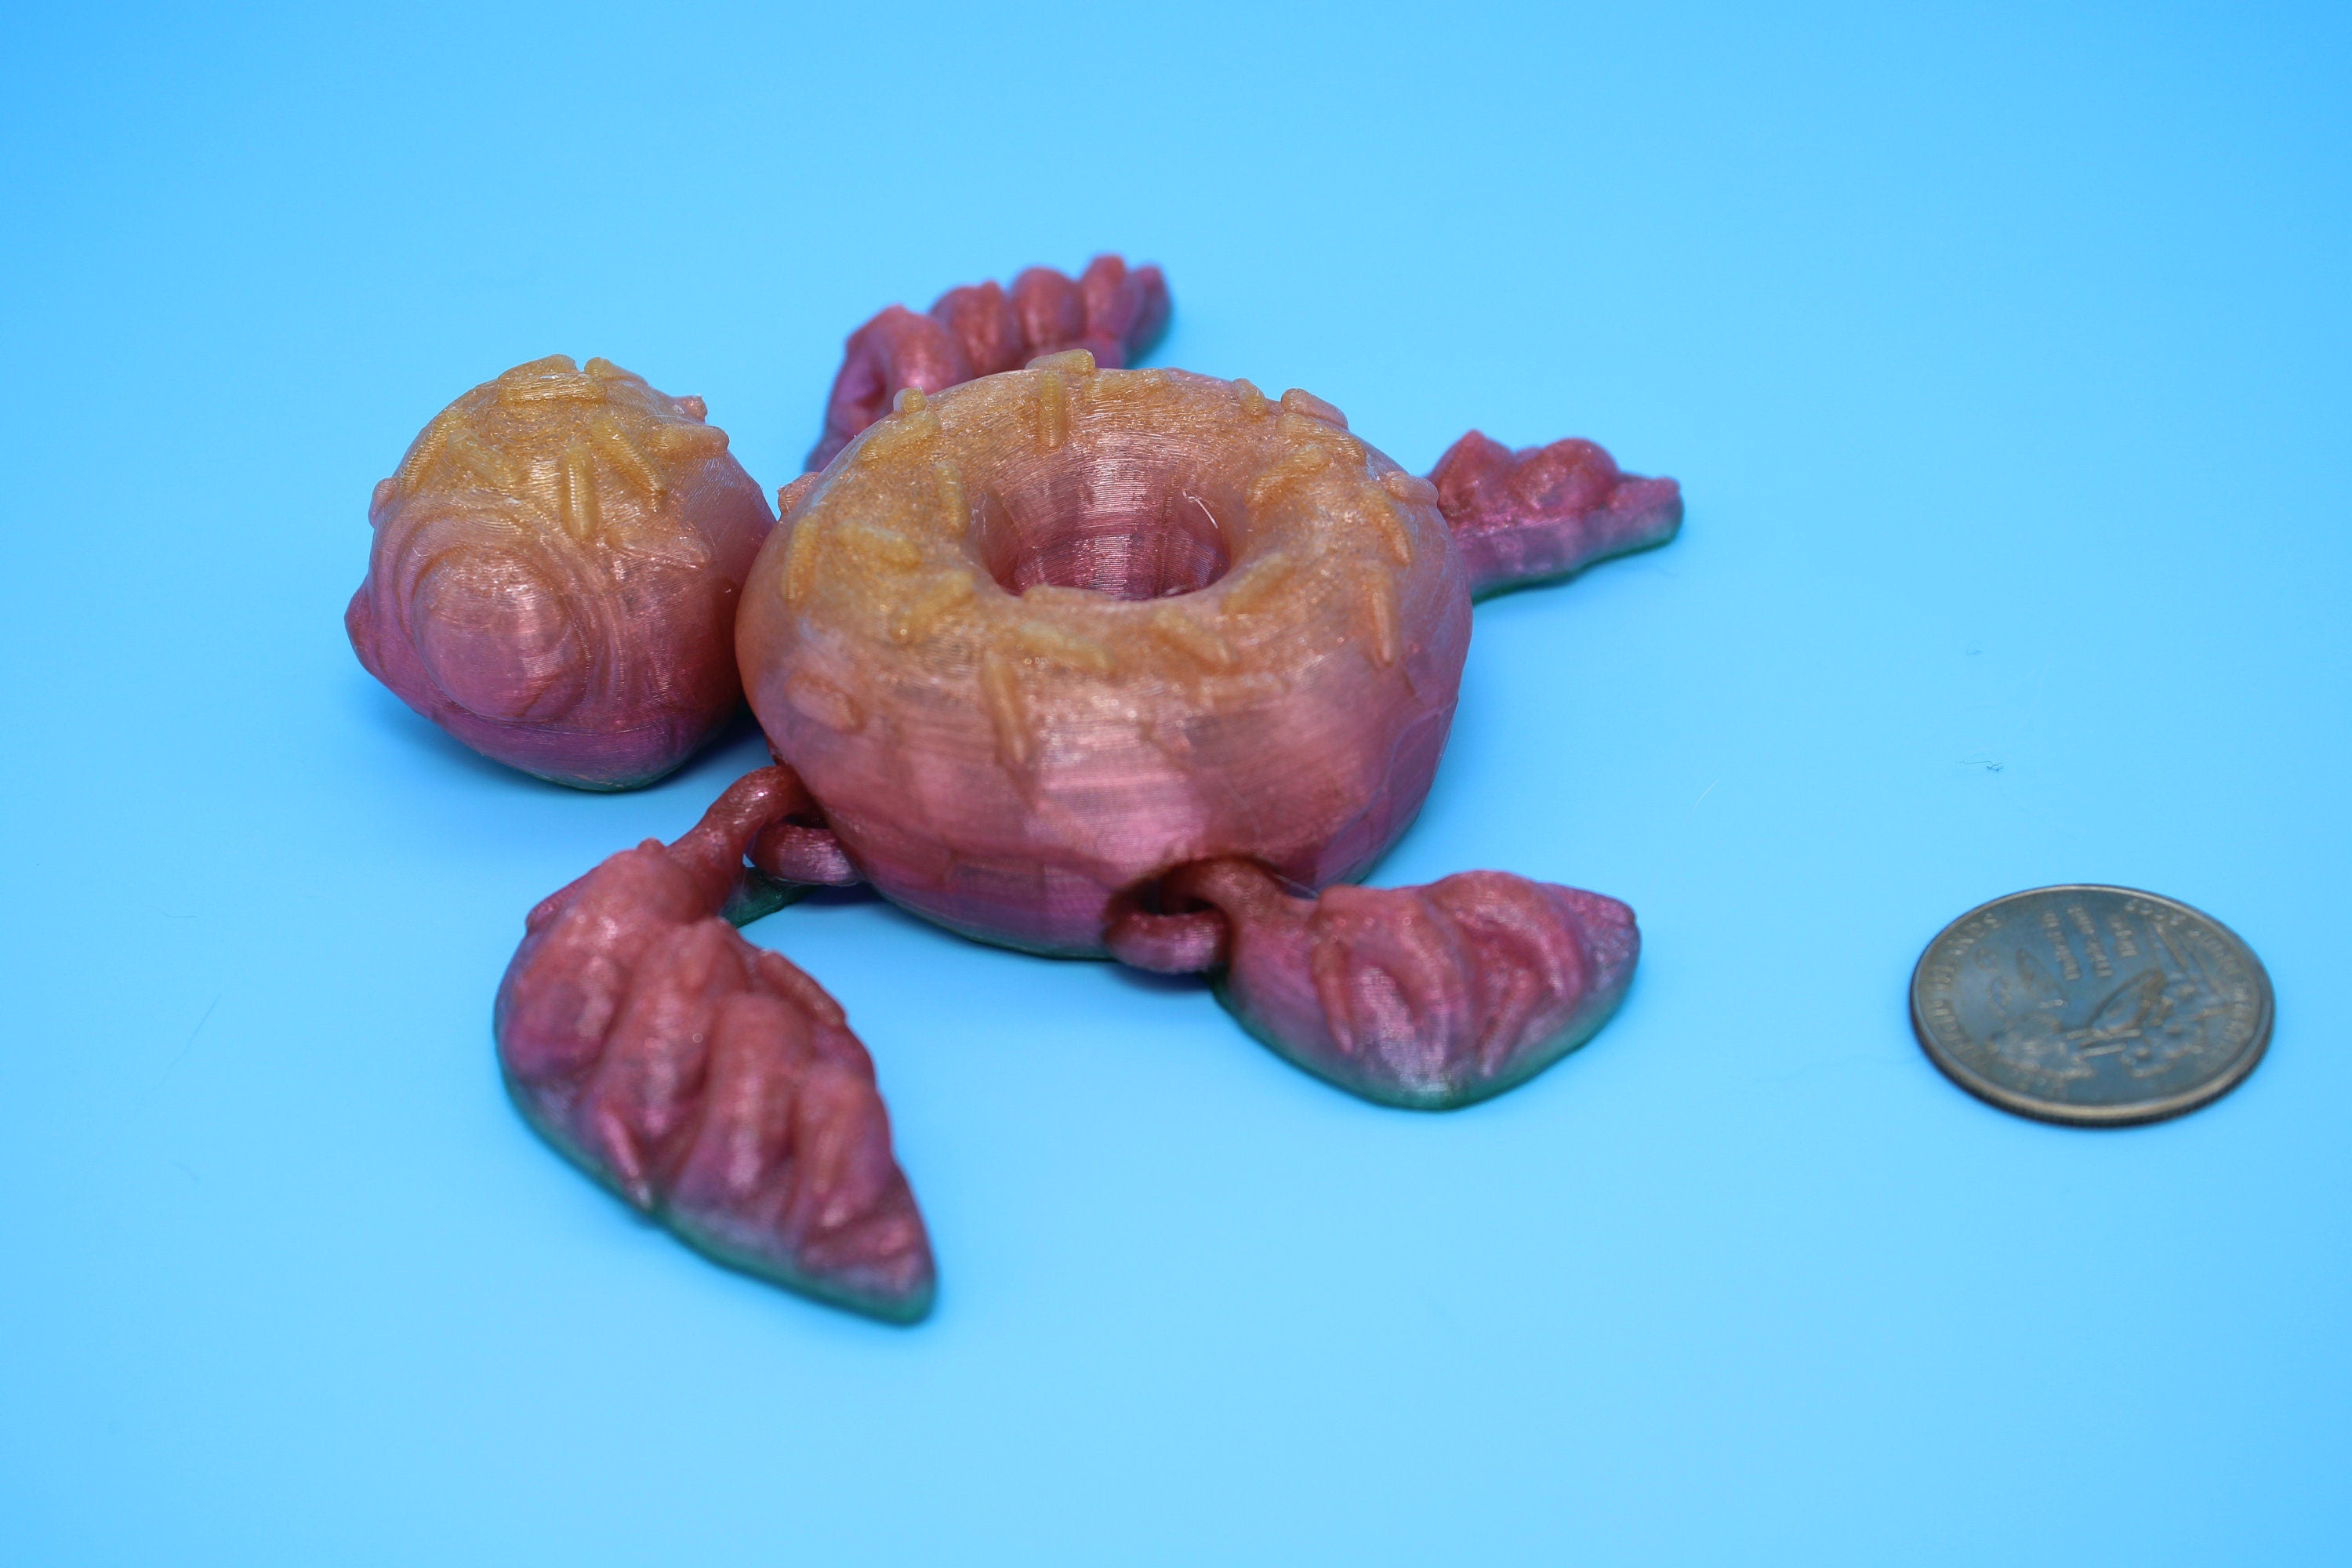 Turtle - Doughnut Turtle | Articulating (Donurtle) | 3D Printed TPU | Flexi Fidget Turtle | Desk Fidget Toy.